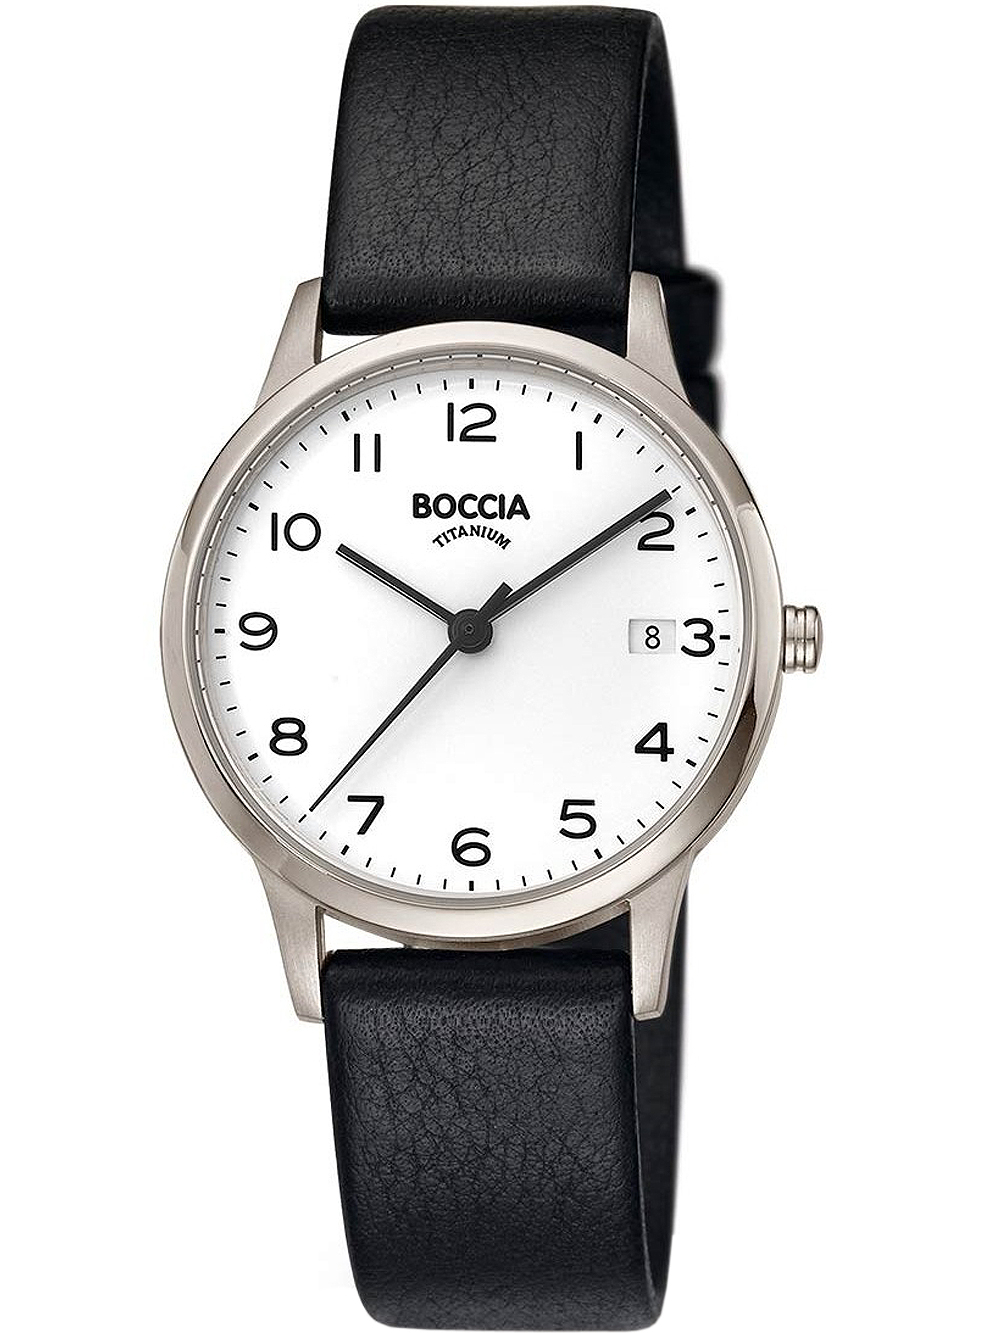 Dámské hodinky Boccia 3310-01 ladies watch titanium 32mm 5ATM